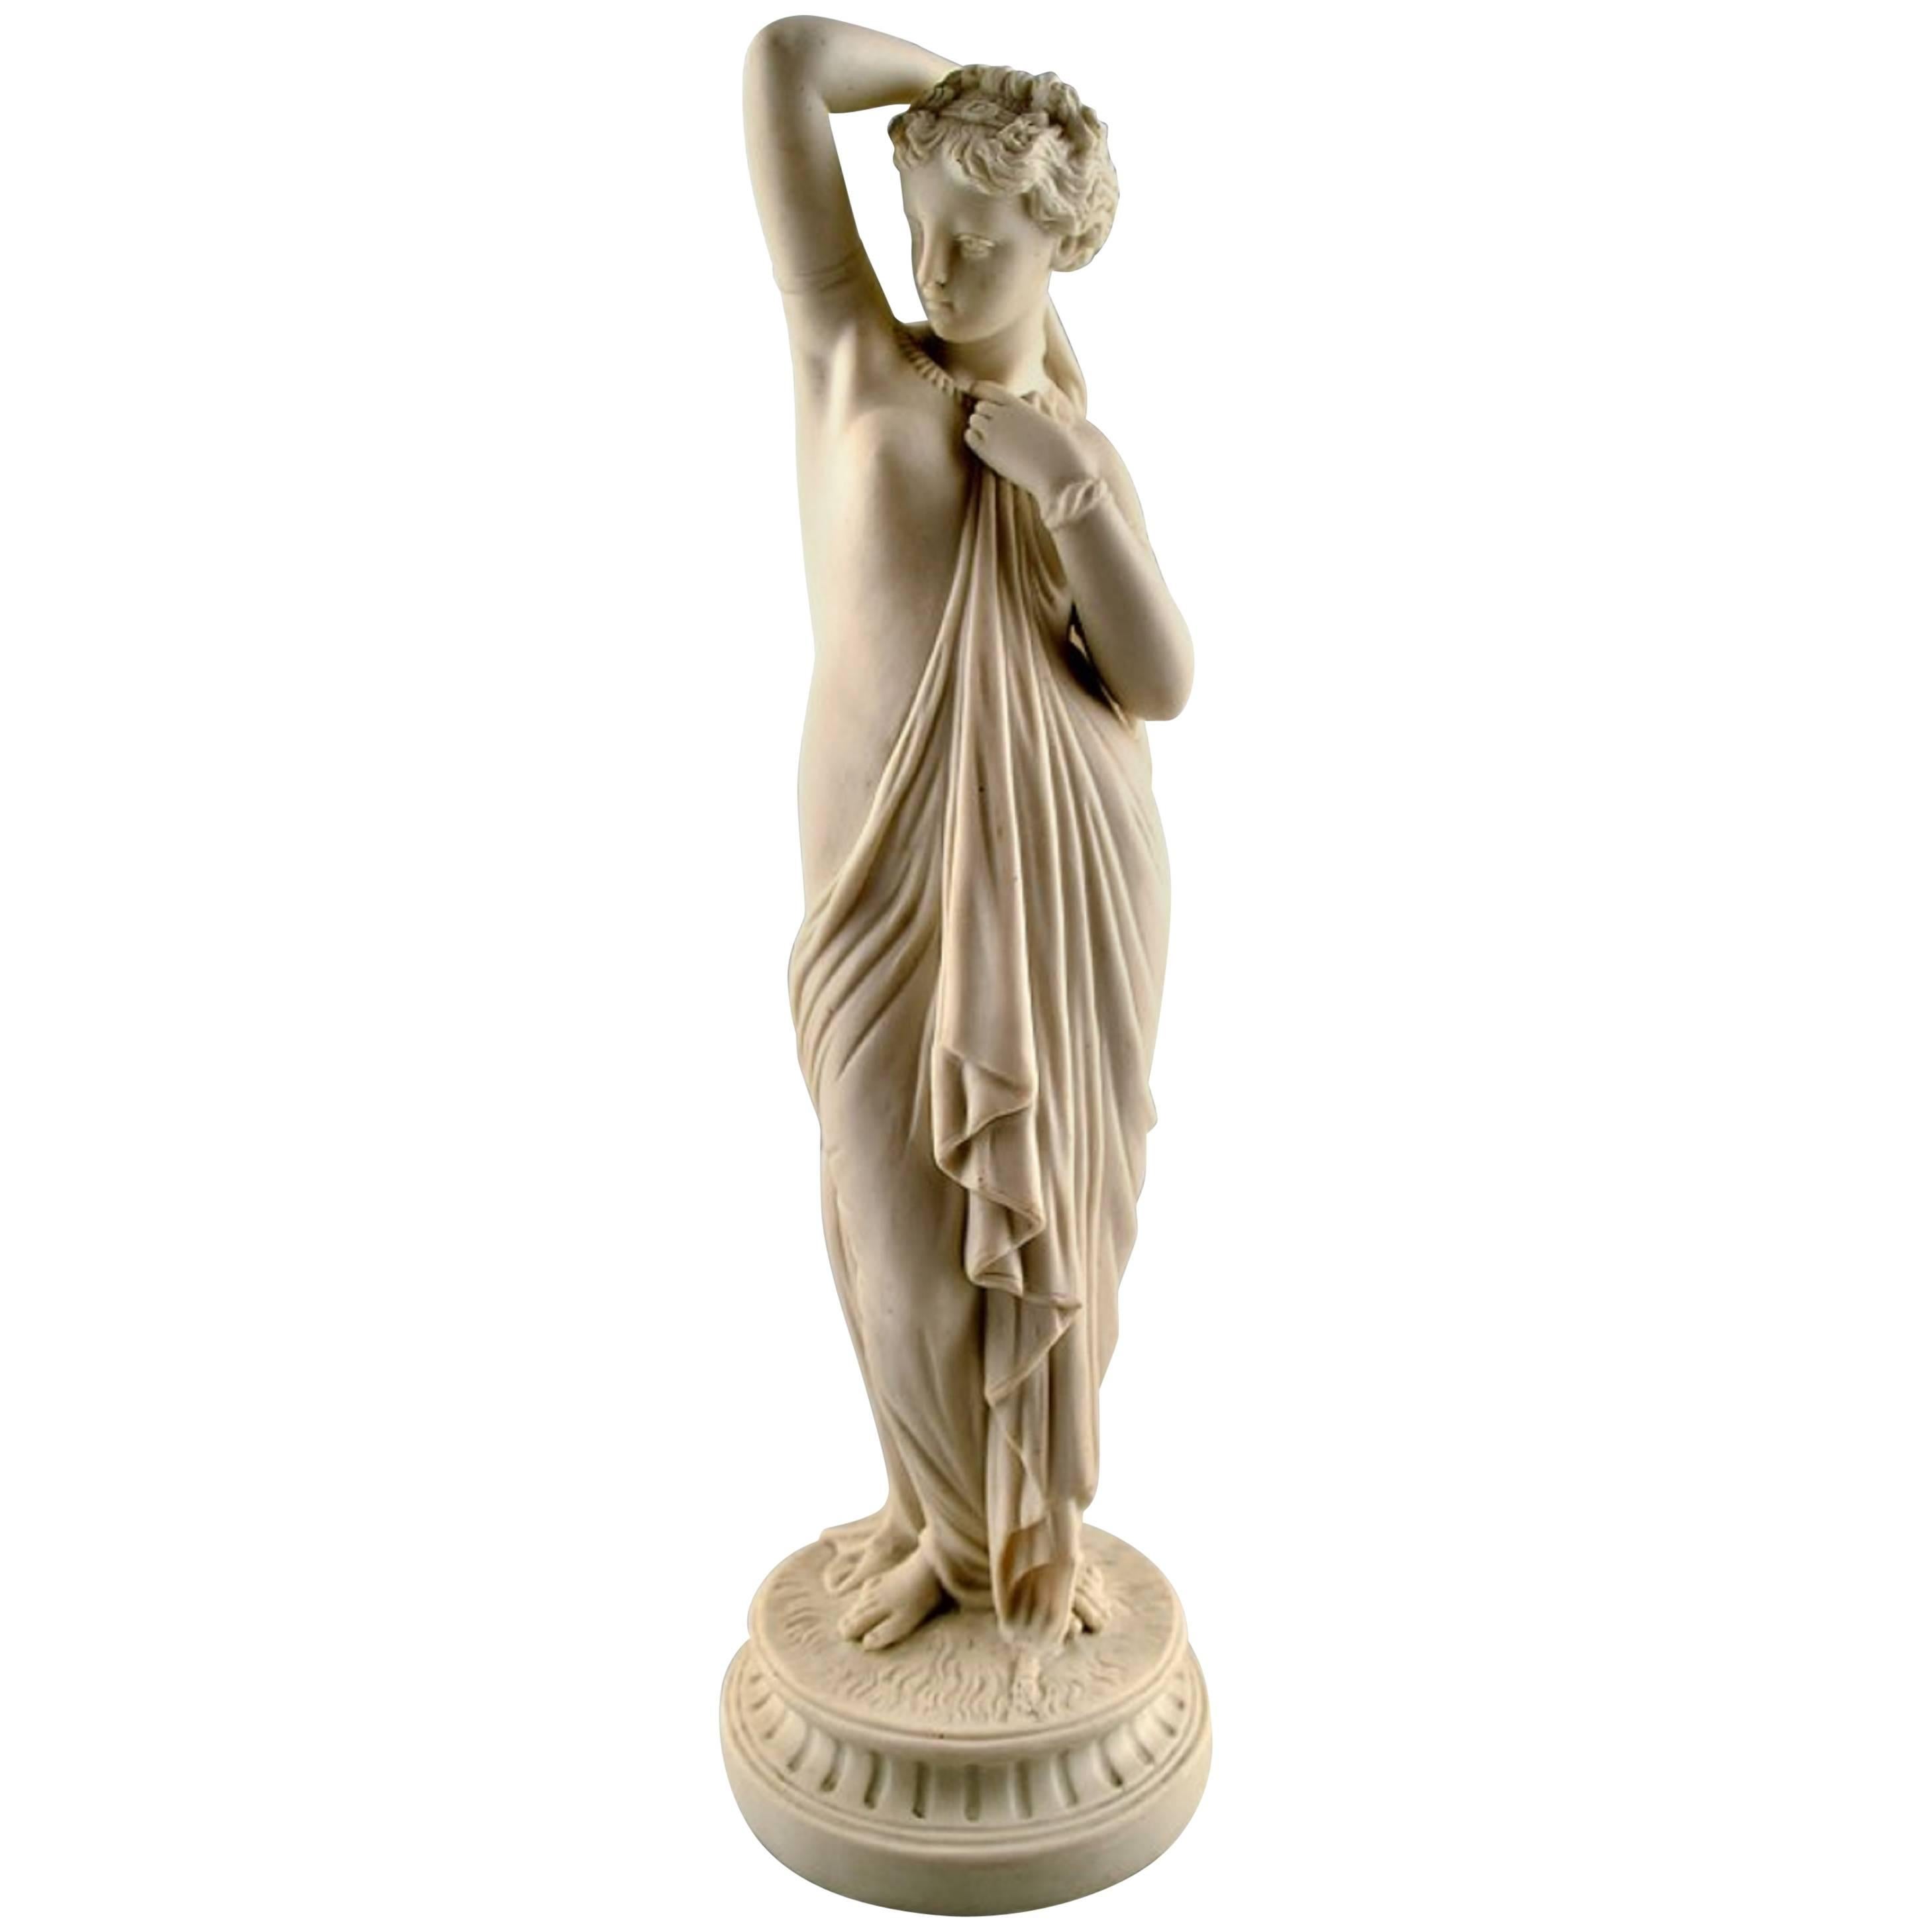 Grande figurine ancienne en biscuit représentant une femme semi-nue dans un style classique